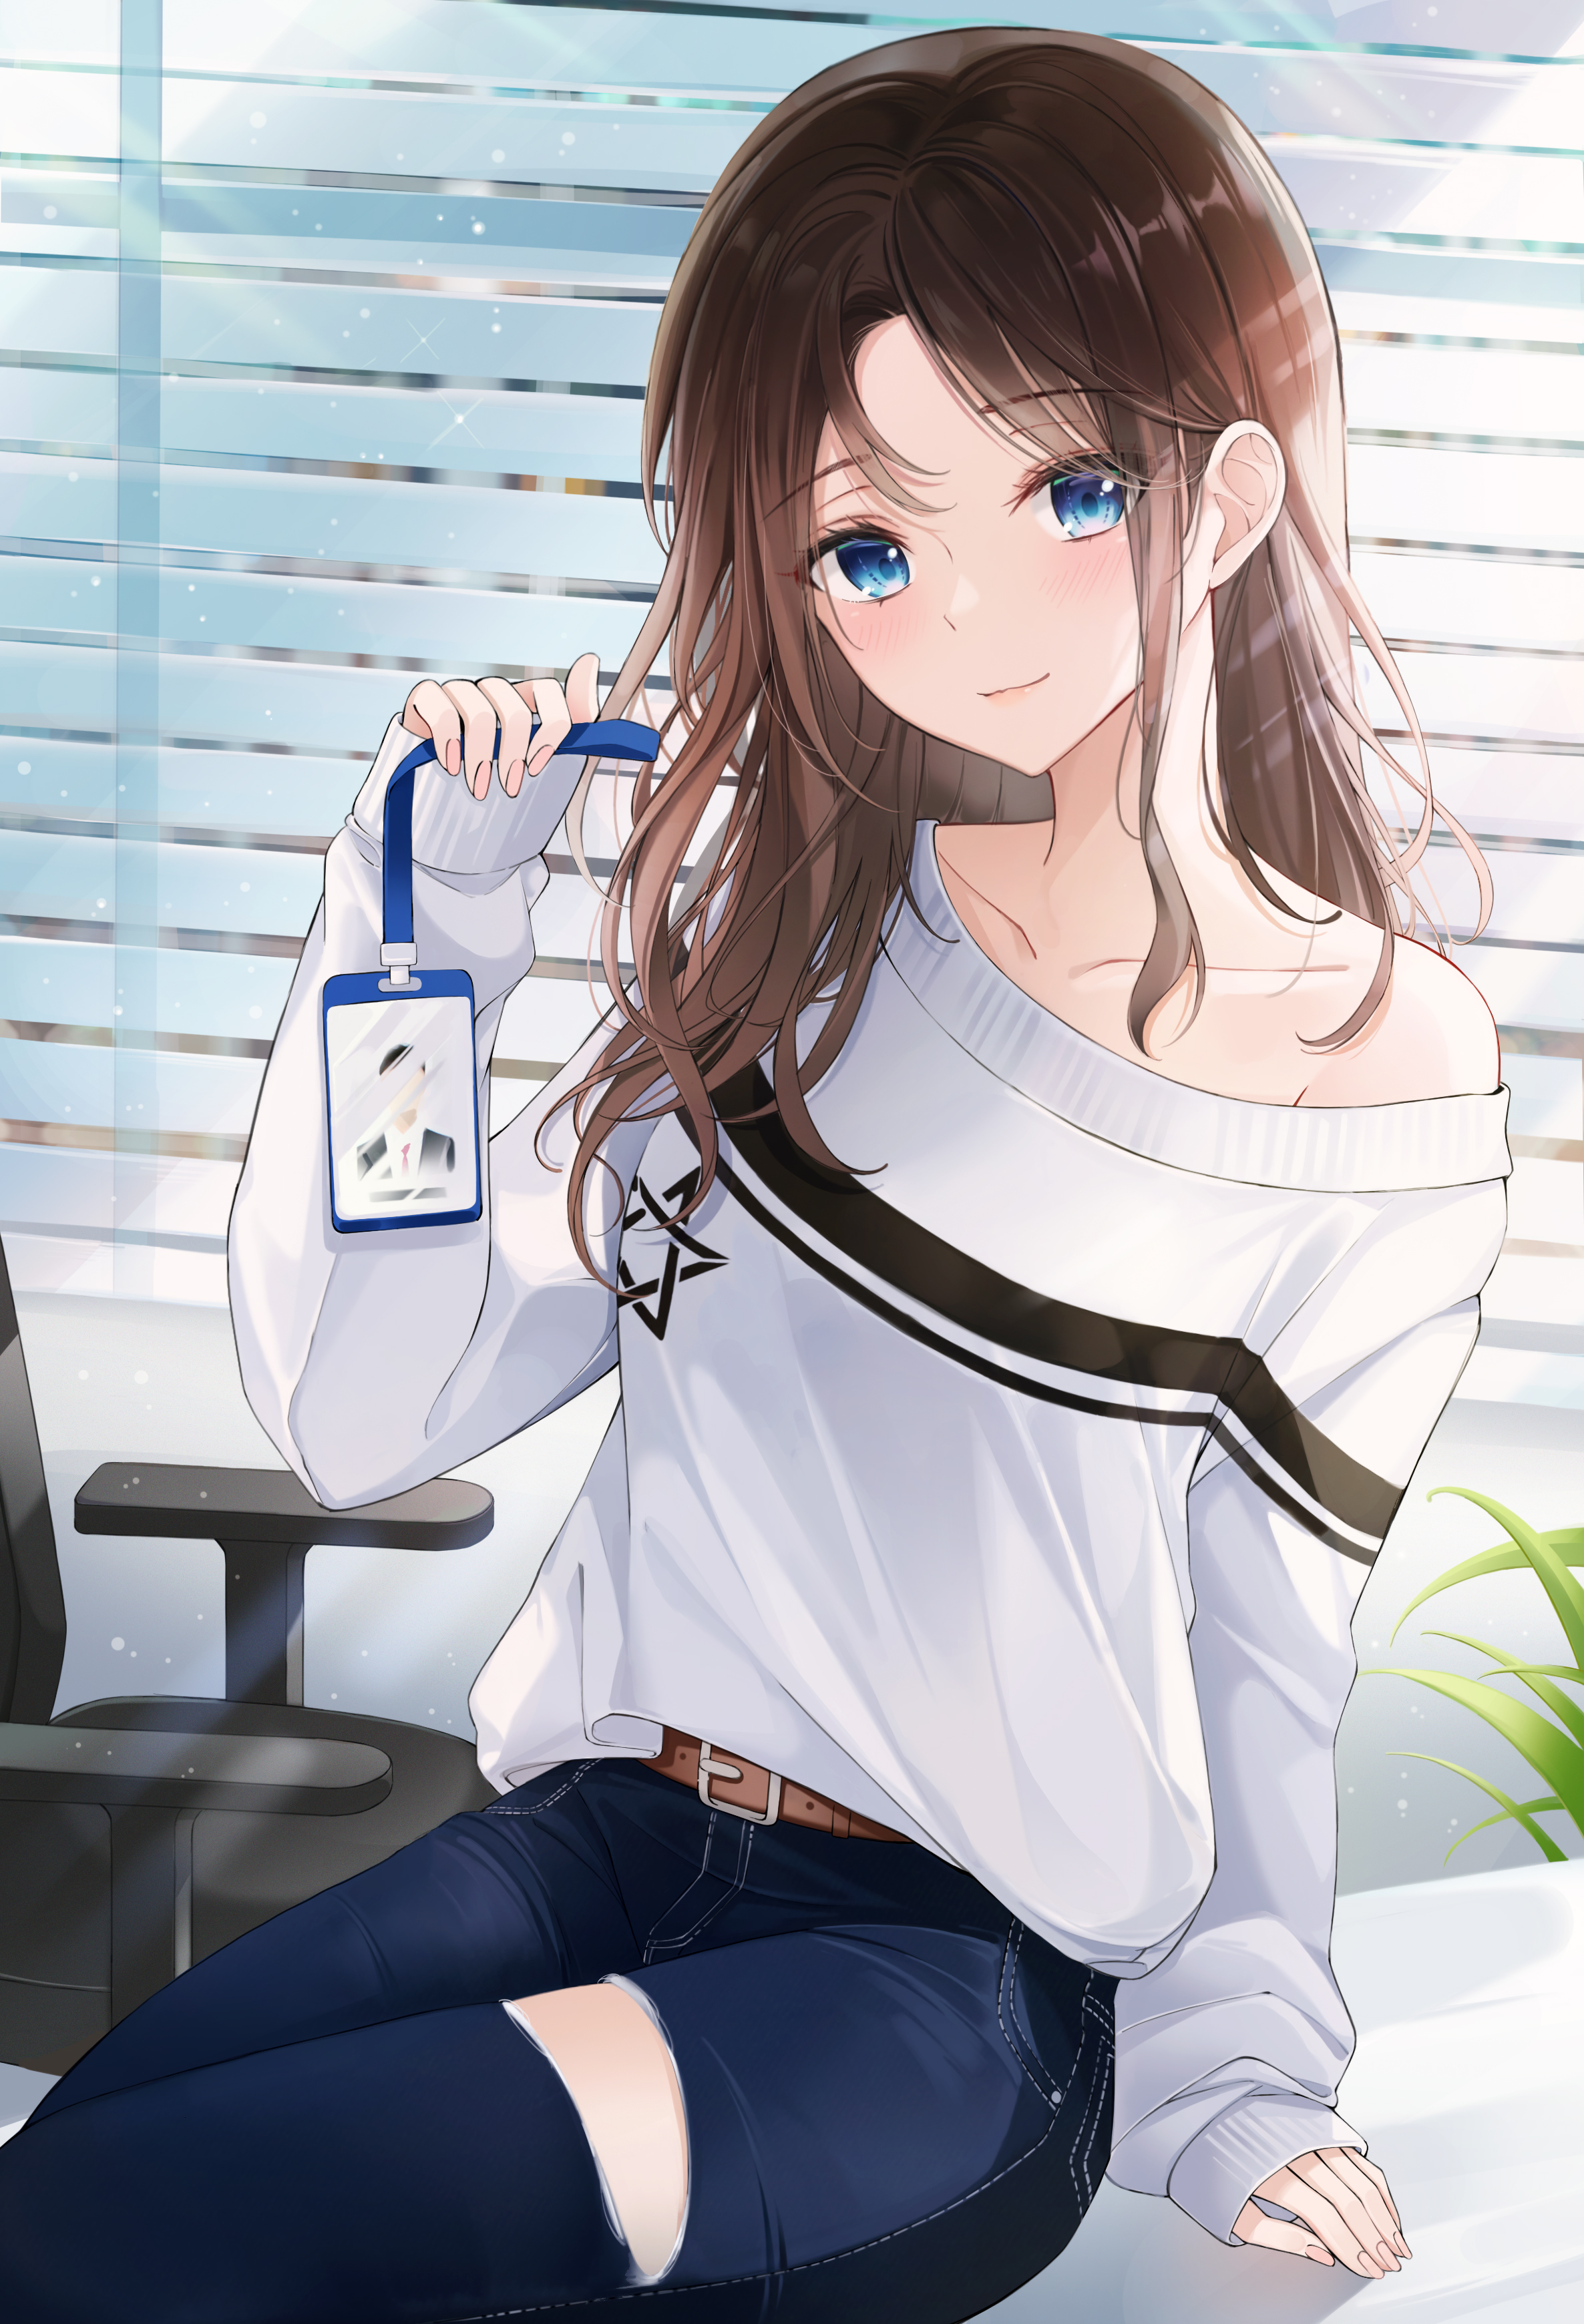 Những tín đồ yêu thích anime girls sẽ không thể bỏ qua bức hình tuyệt đẹp này. Cô gái trong bức tranh với đôi mắt xanh nhìn sâu xa, chiếc áo len dễ thương và vibe năng động trẻ trung. Đây chắc chắn là một trong những bức tranh đầy nghệ thuật và sành điệu dành cho các fan.